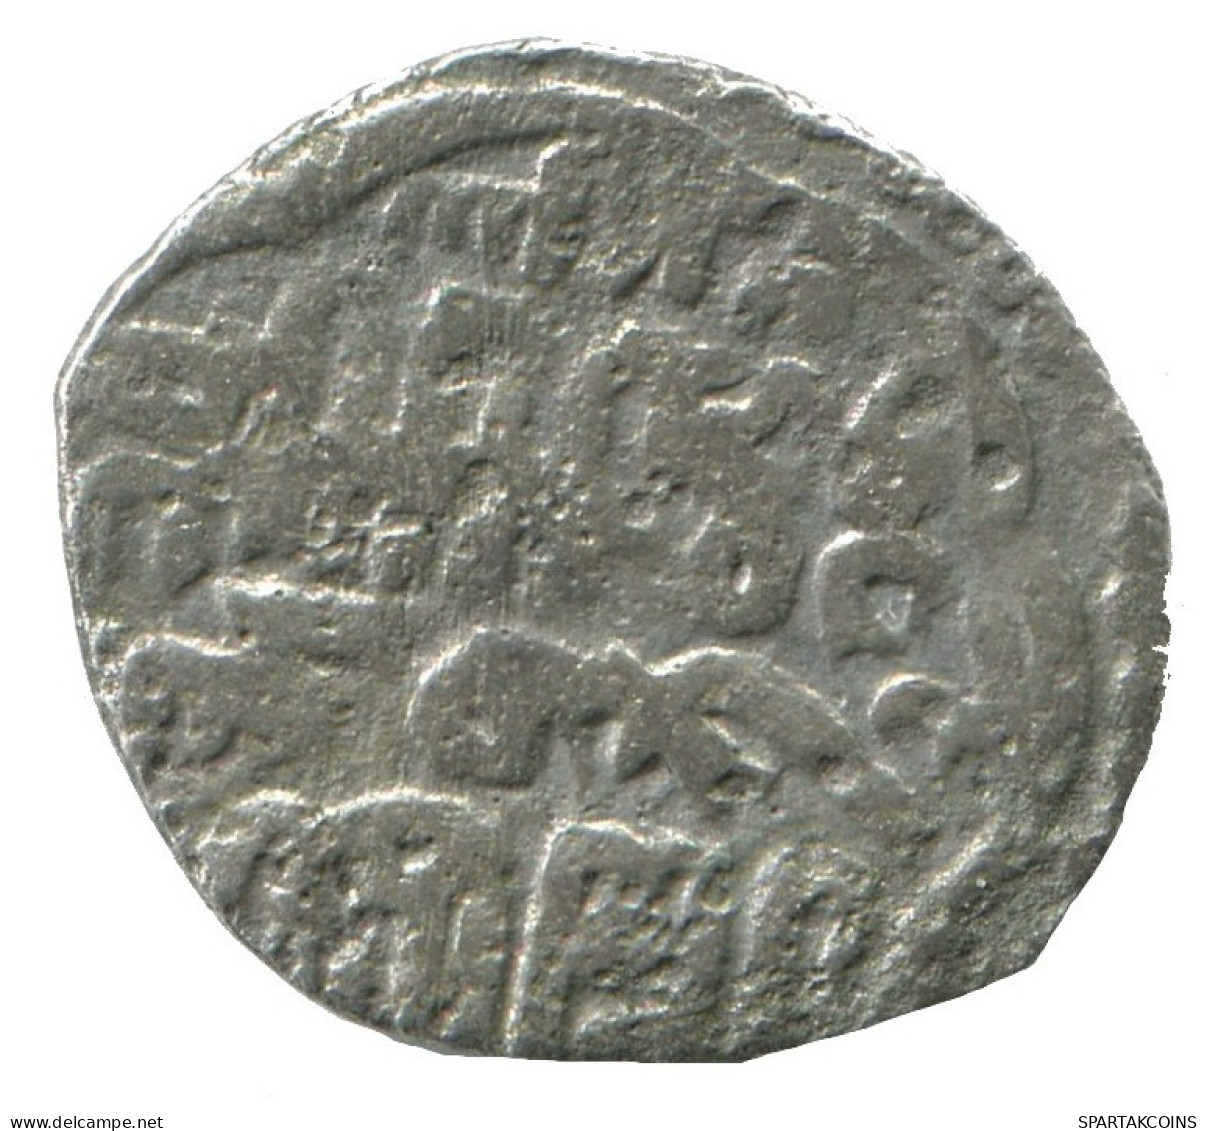 GOLDEN HORDE Silver Dirham Medieval Islamic Coin 1.1g/16mm #NNN2026.8.F.A - Islamiche